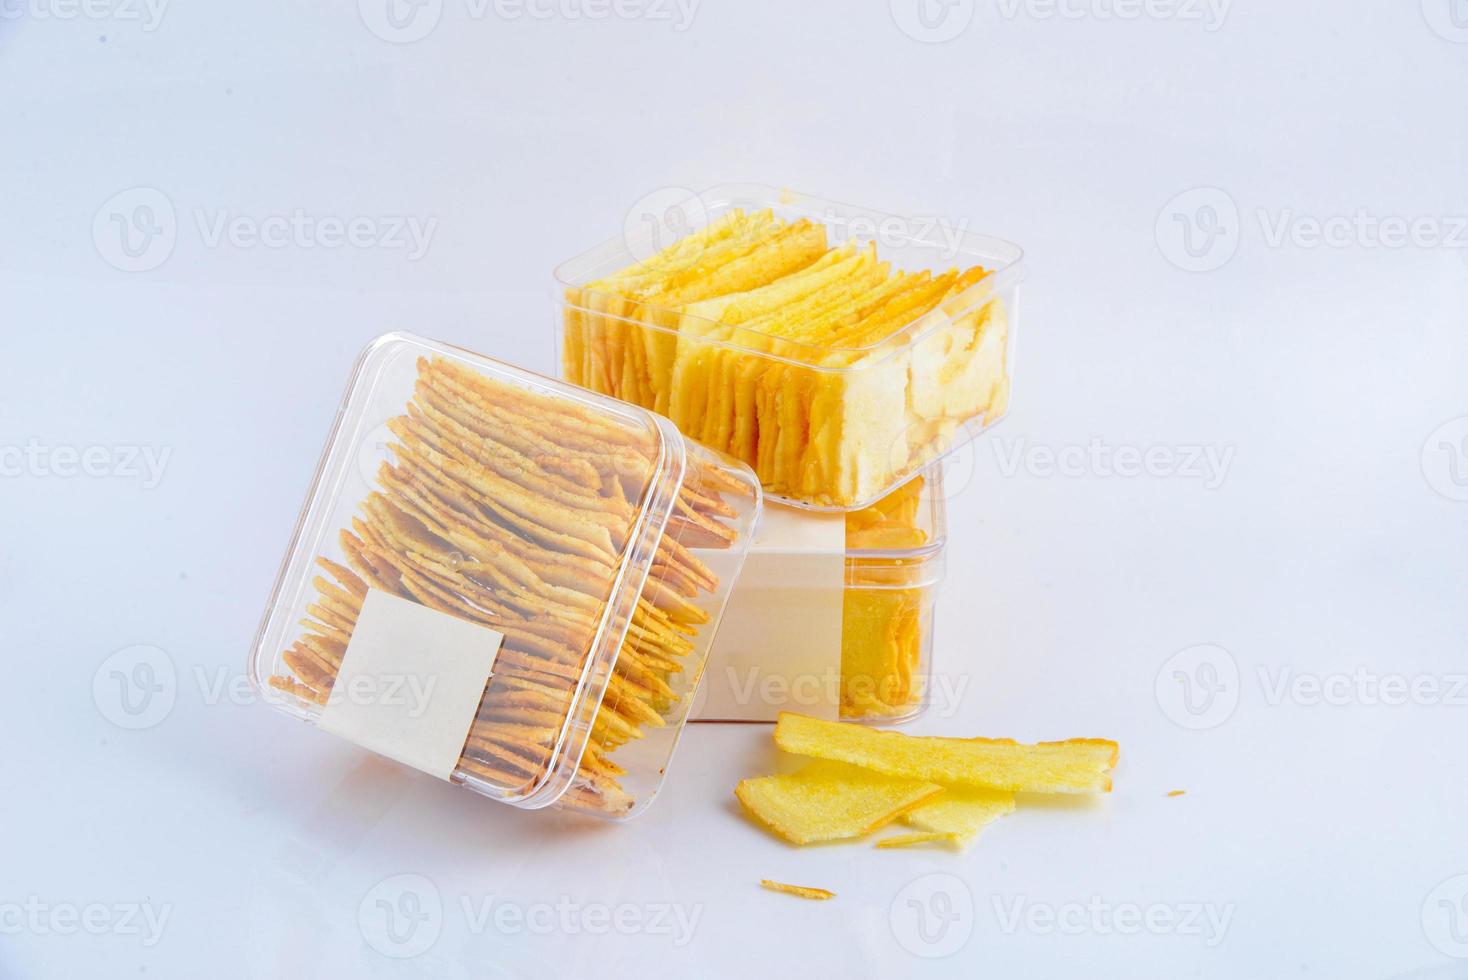 a manteiga de biscoito de lanche na caixa transparente. foto